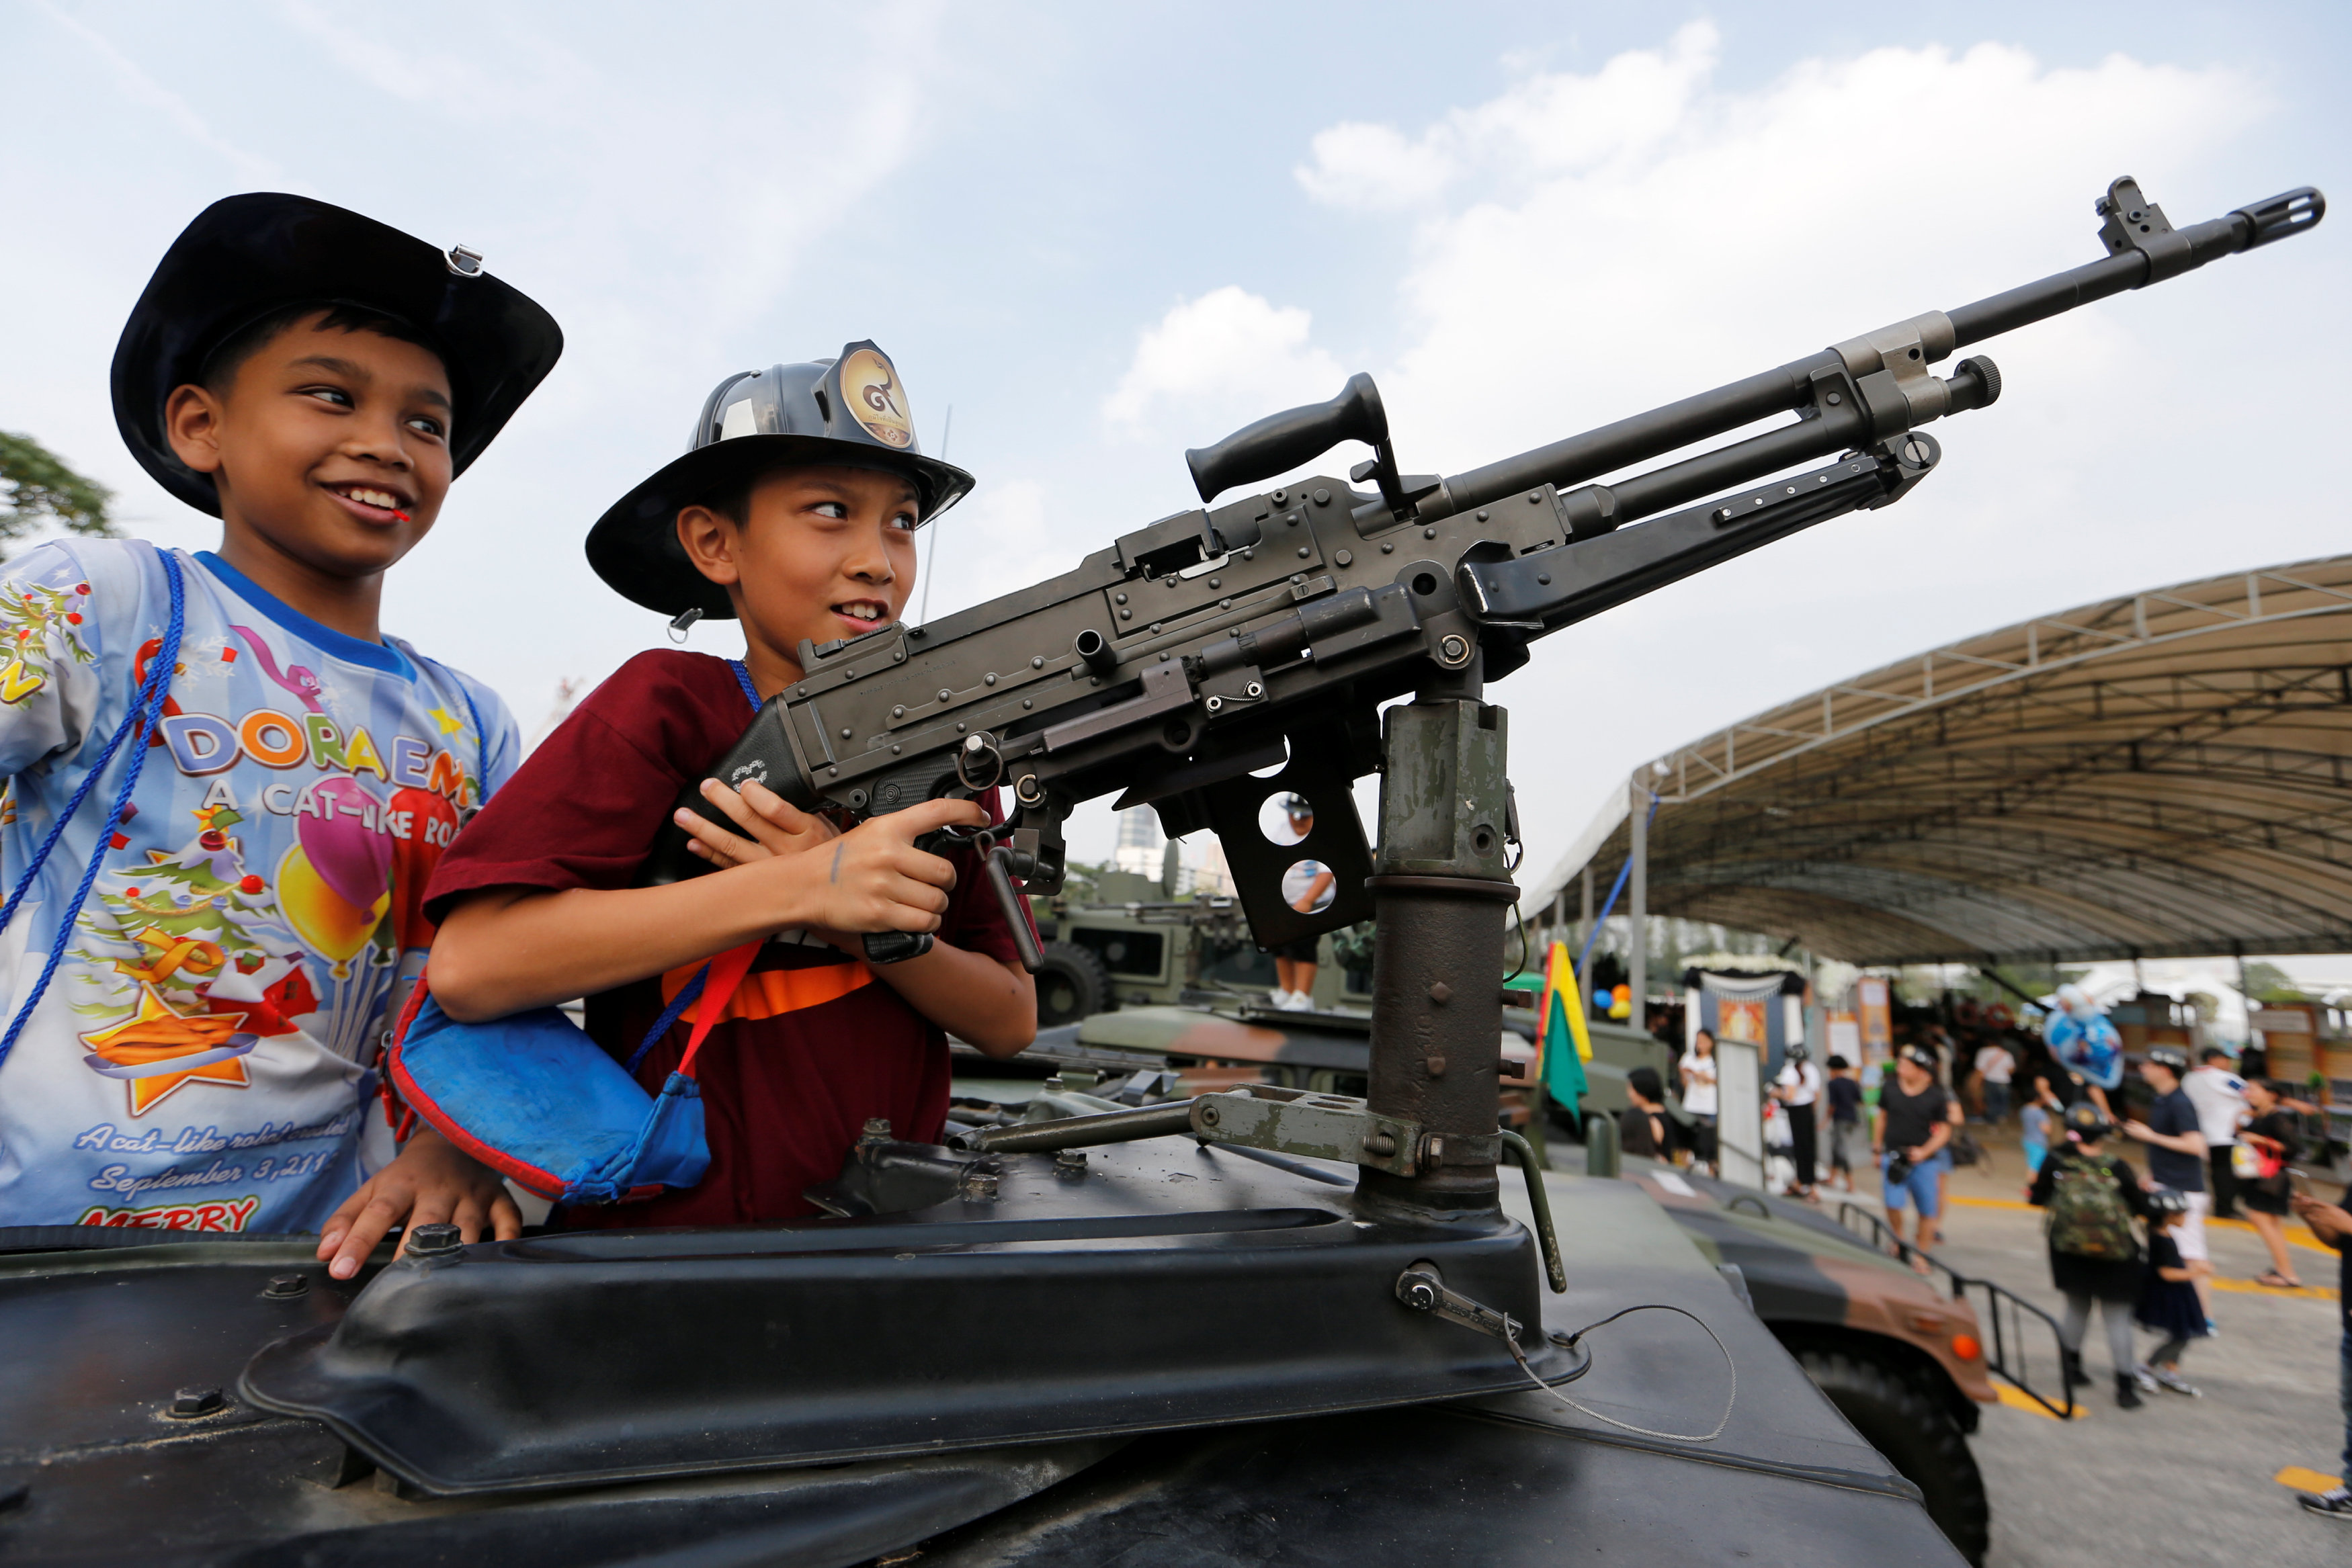 أطفال يمسكون بالسلاح أعلى سيارة مصفحة خلال احتفالات يوم الطفل فى تايلاند